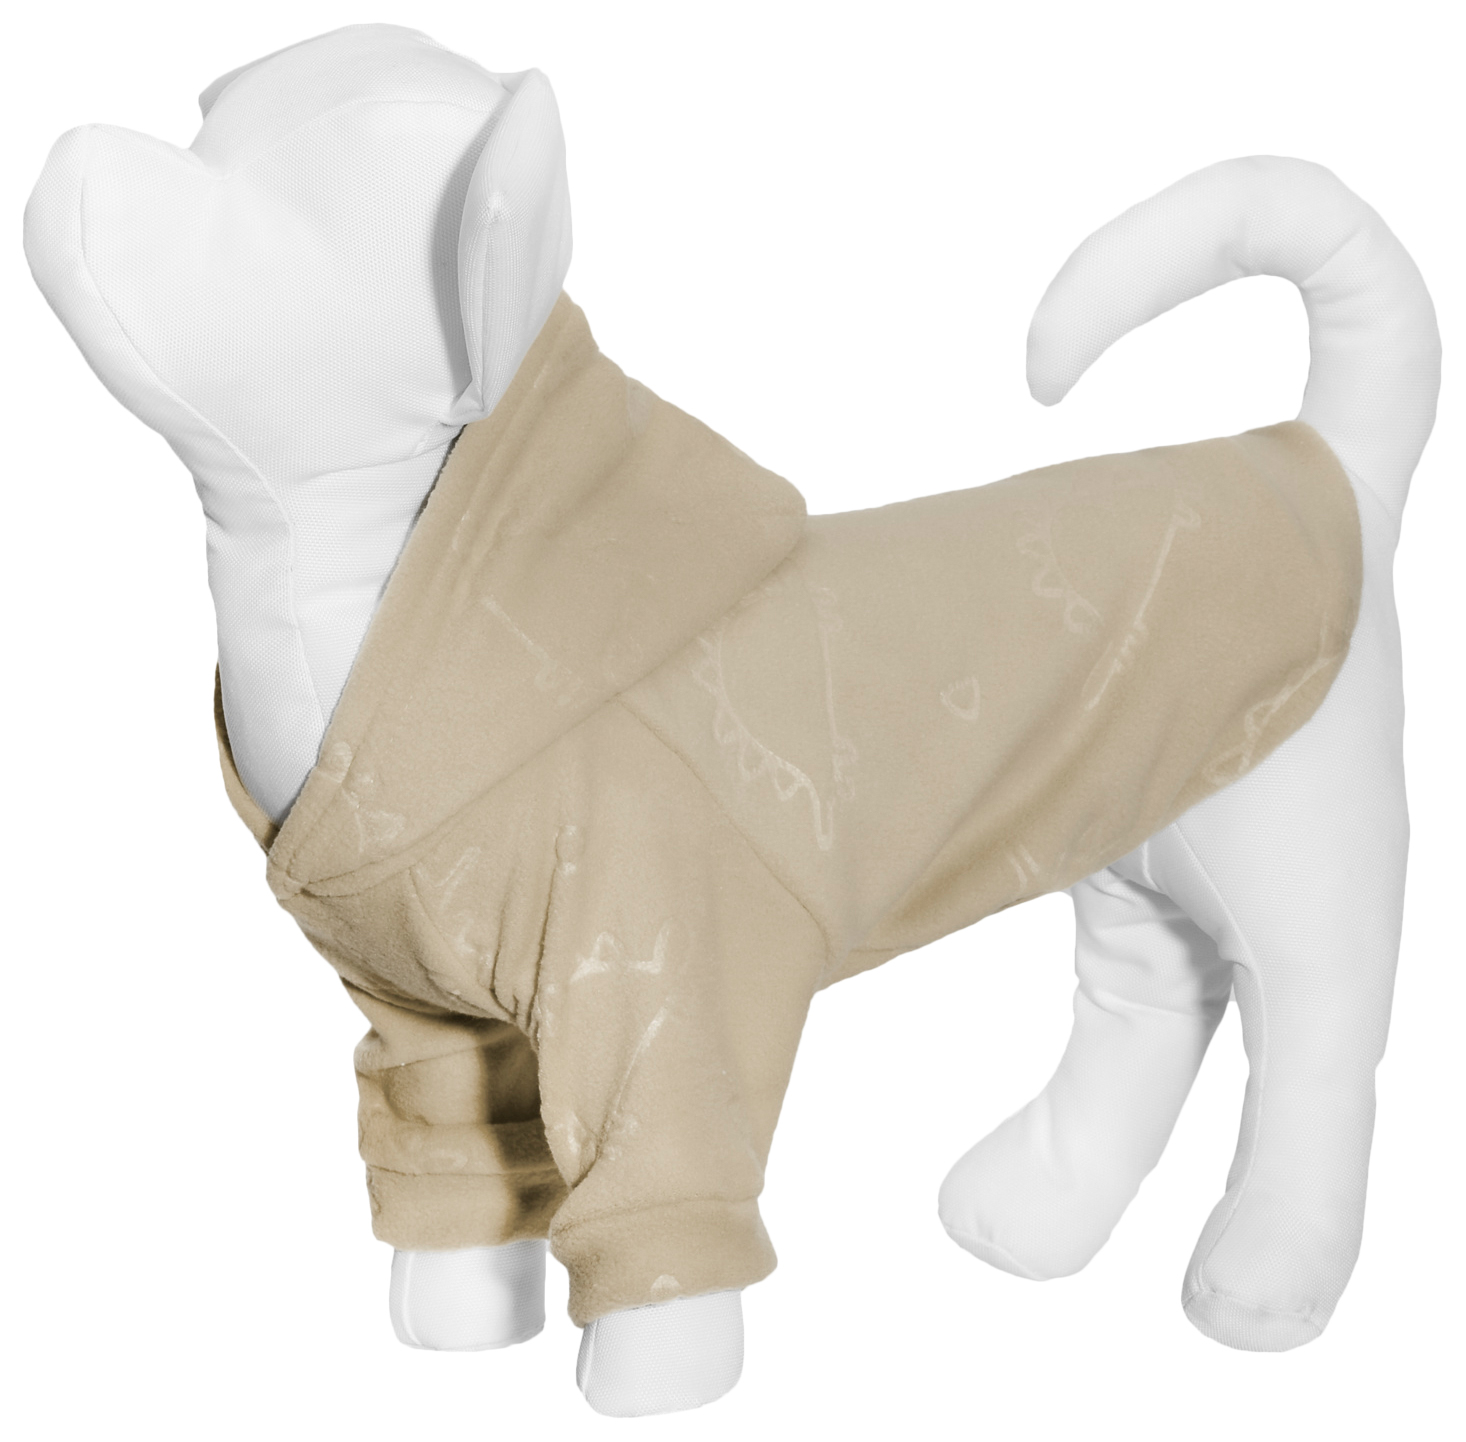 Толстовка для собак Yami-Yami одежда Динозавры, унисекс, бежевый, XL, длина спины 34 см